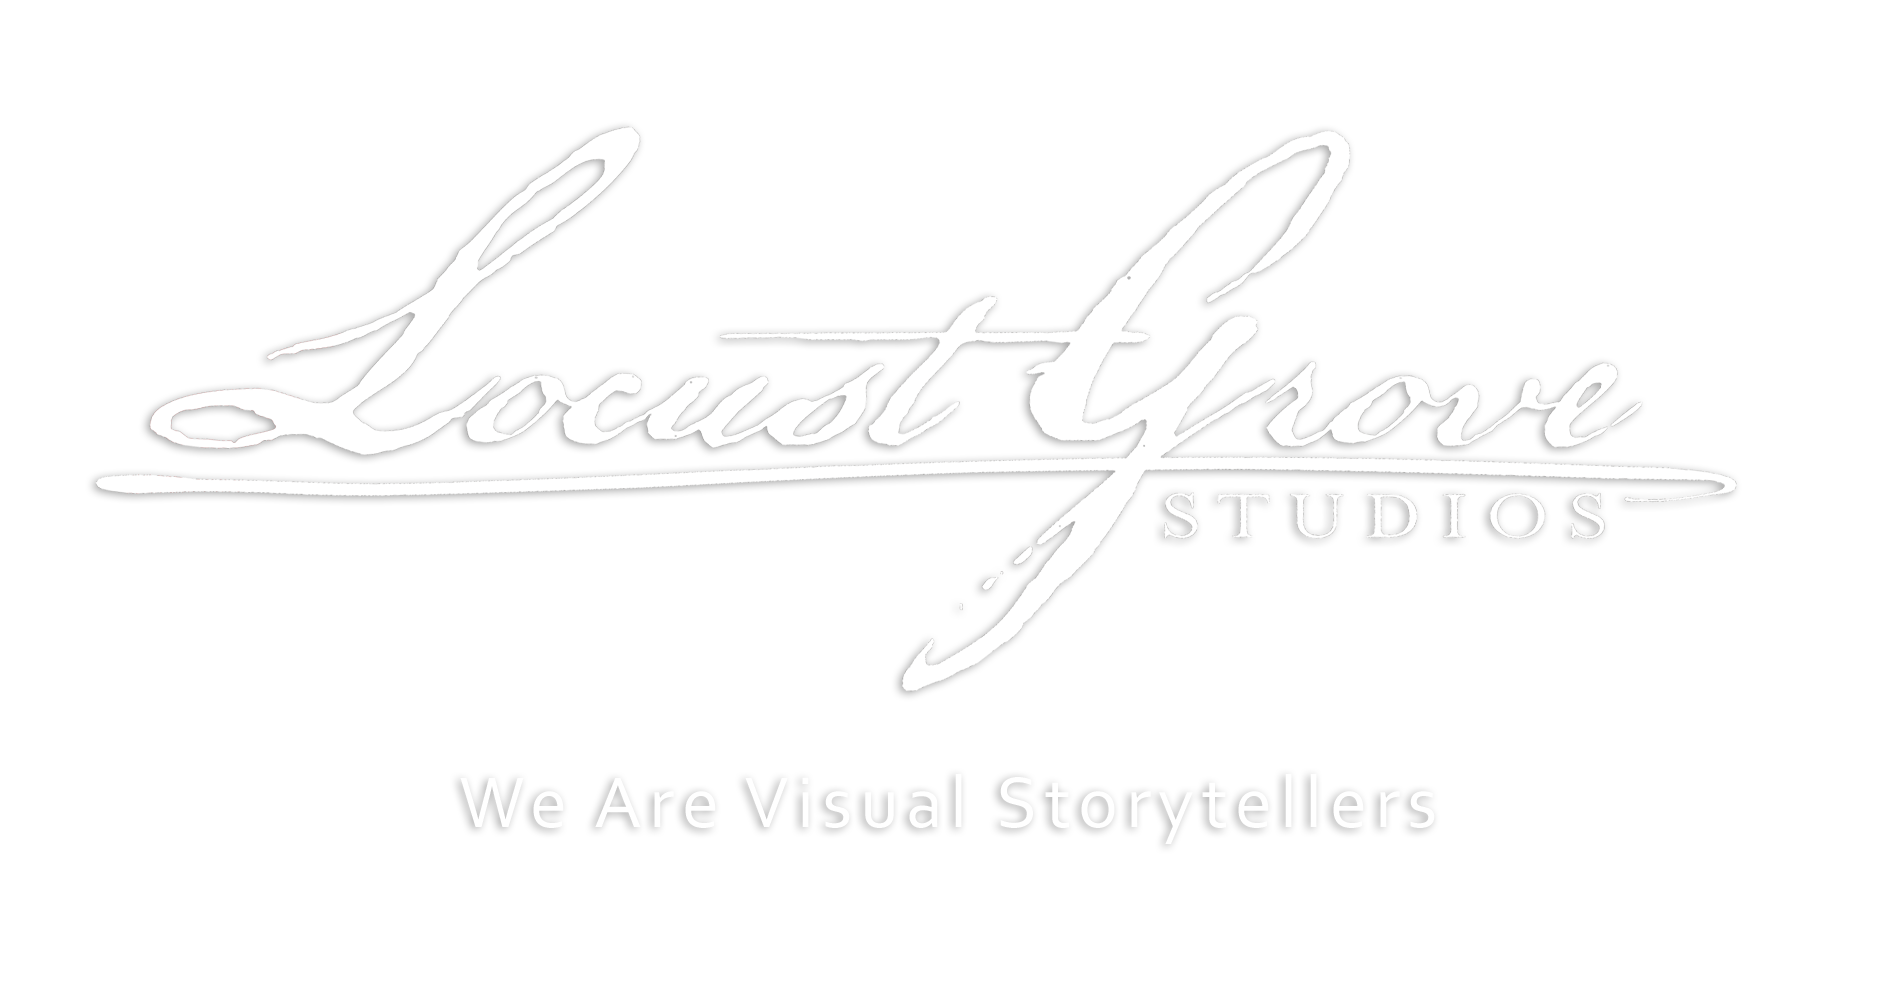 Locust Grove Studios logo